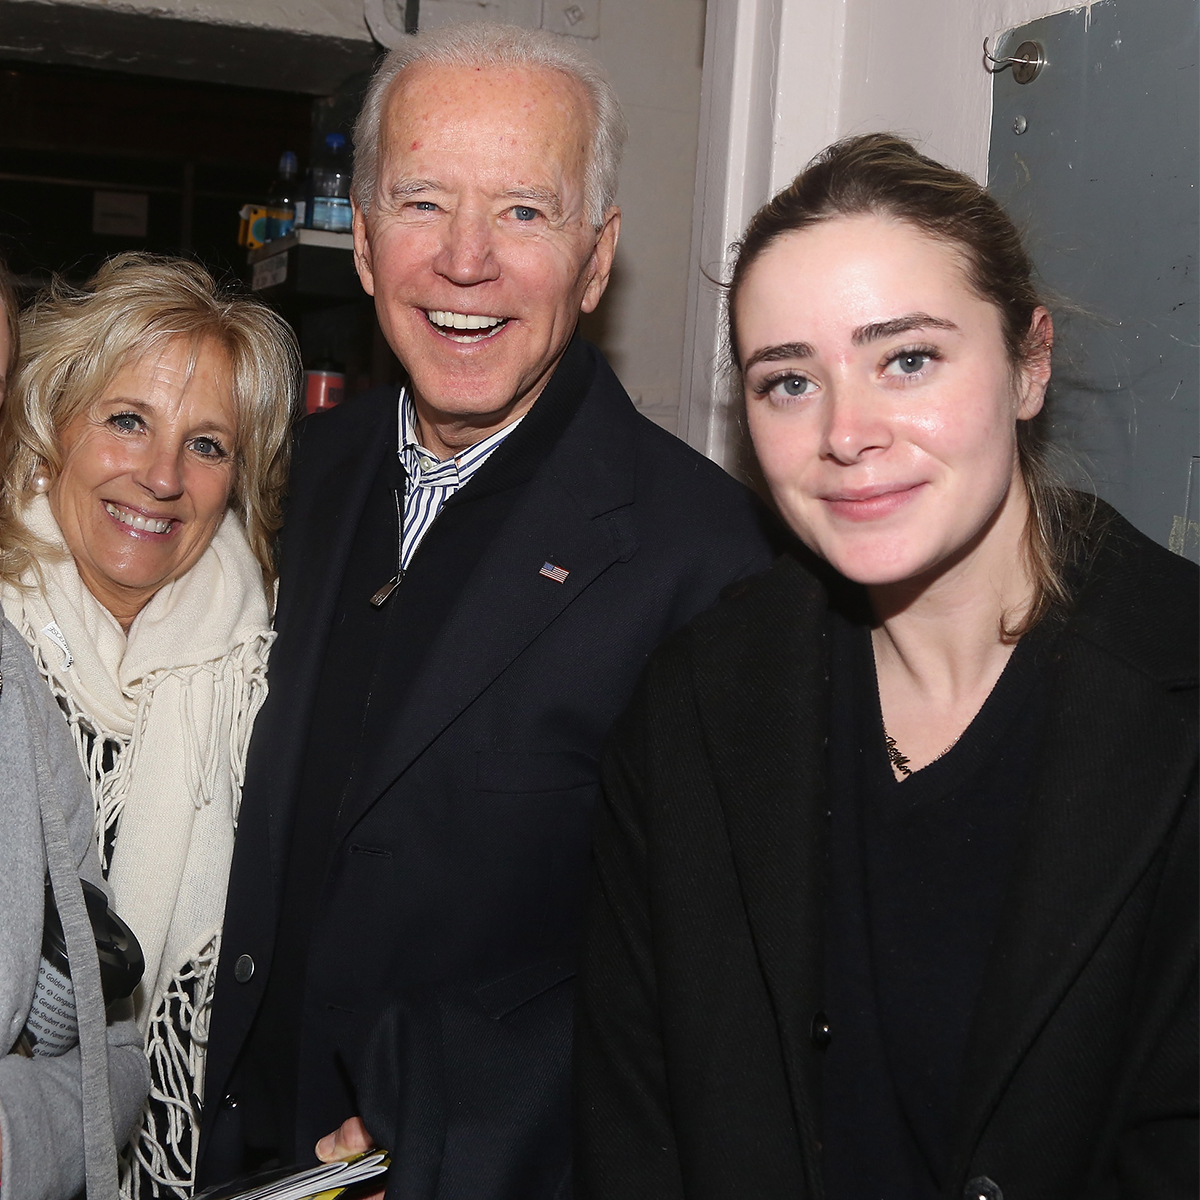 A Guide to Joe Biden's Family Ahead of Naomi's Wedding - E! Online